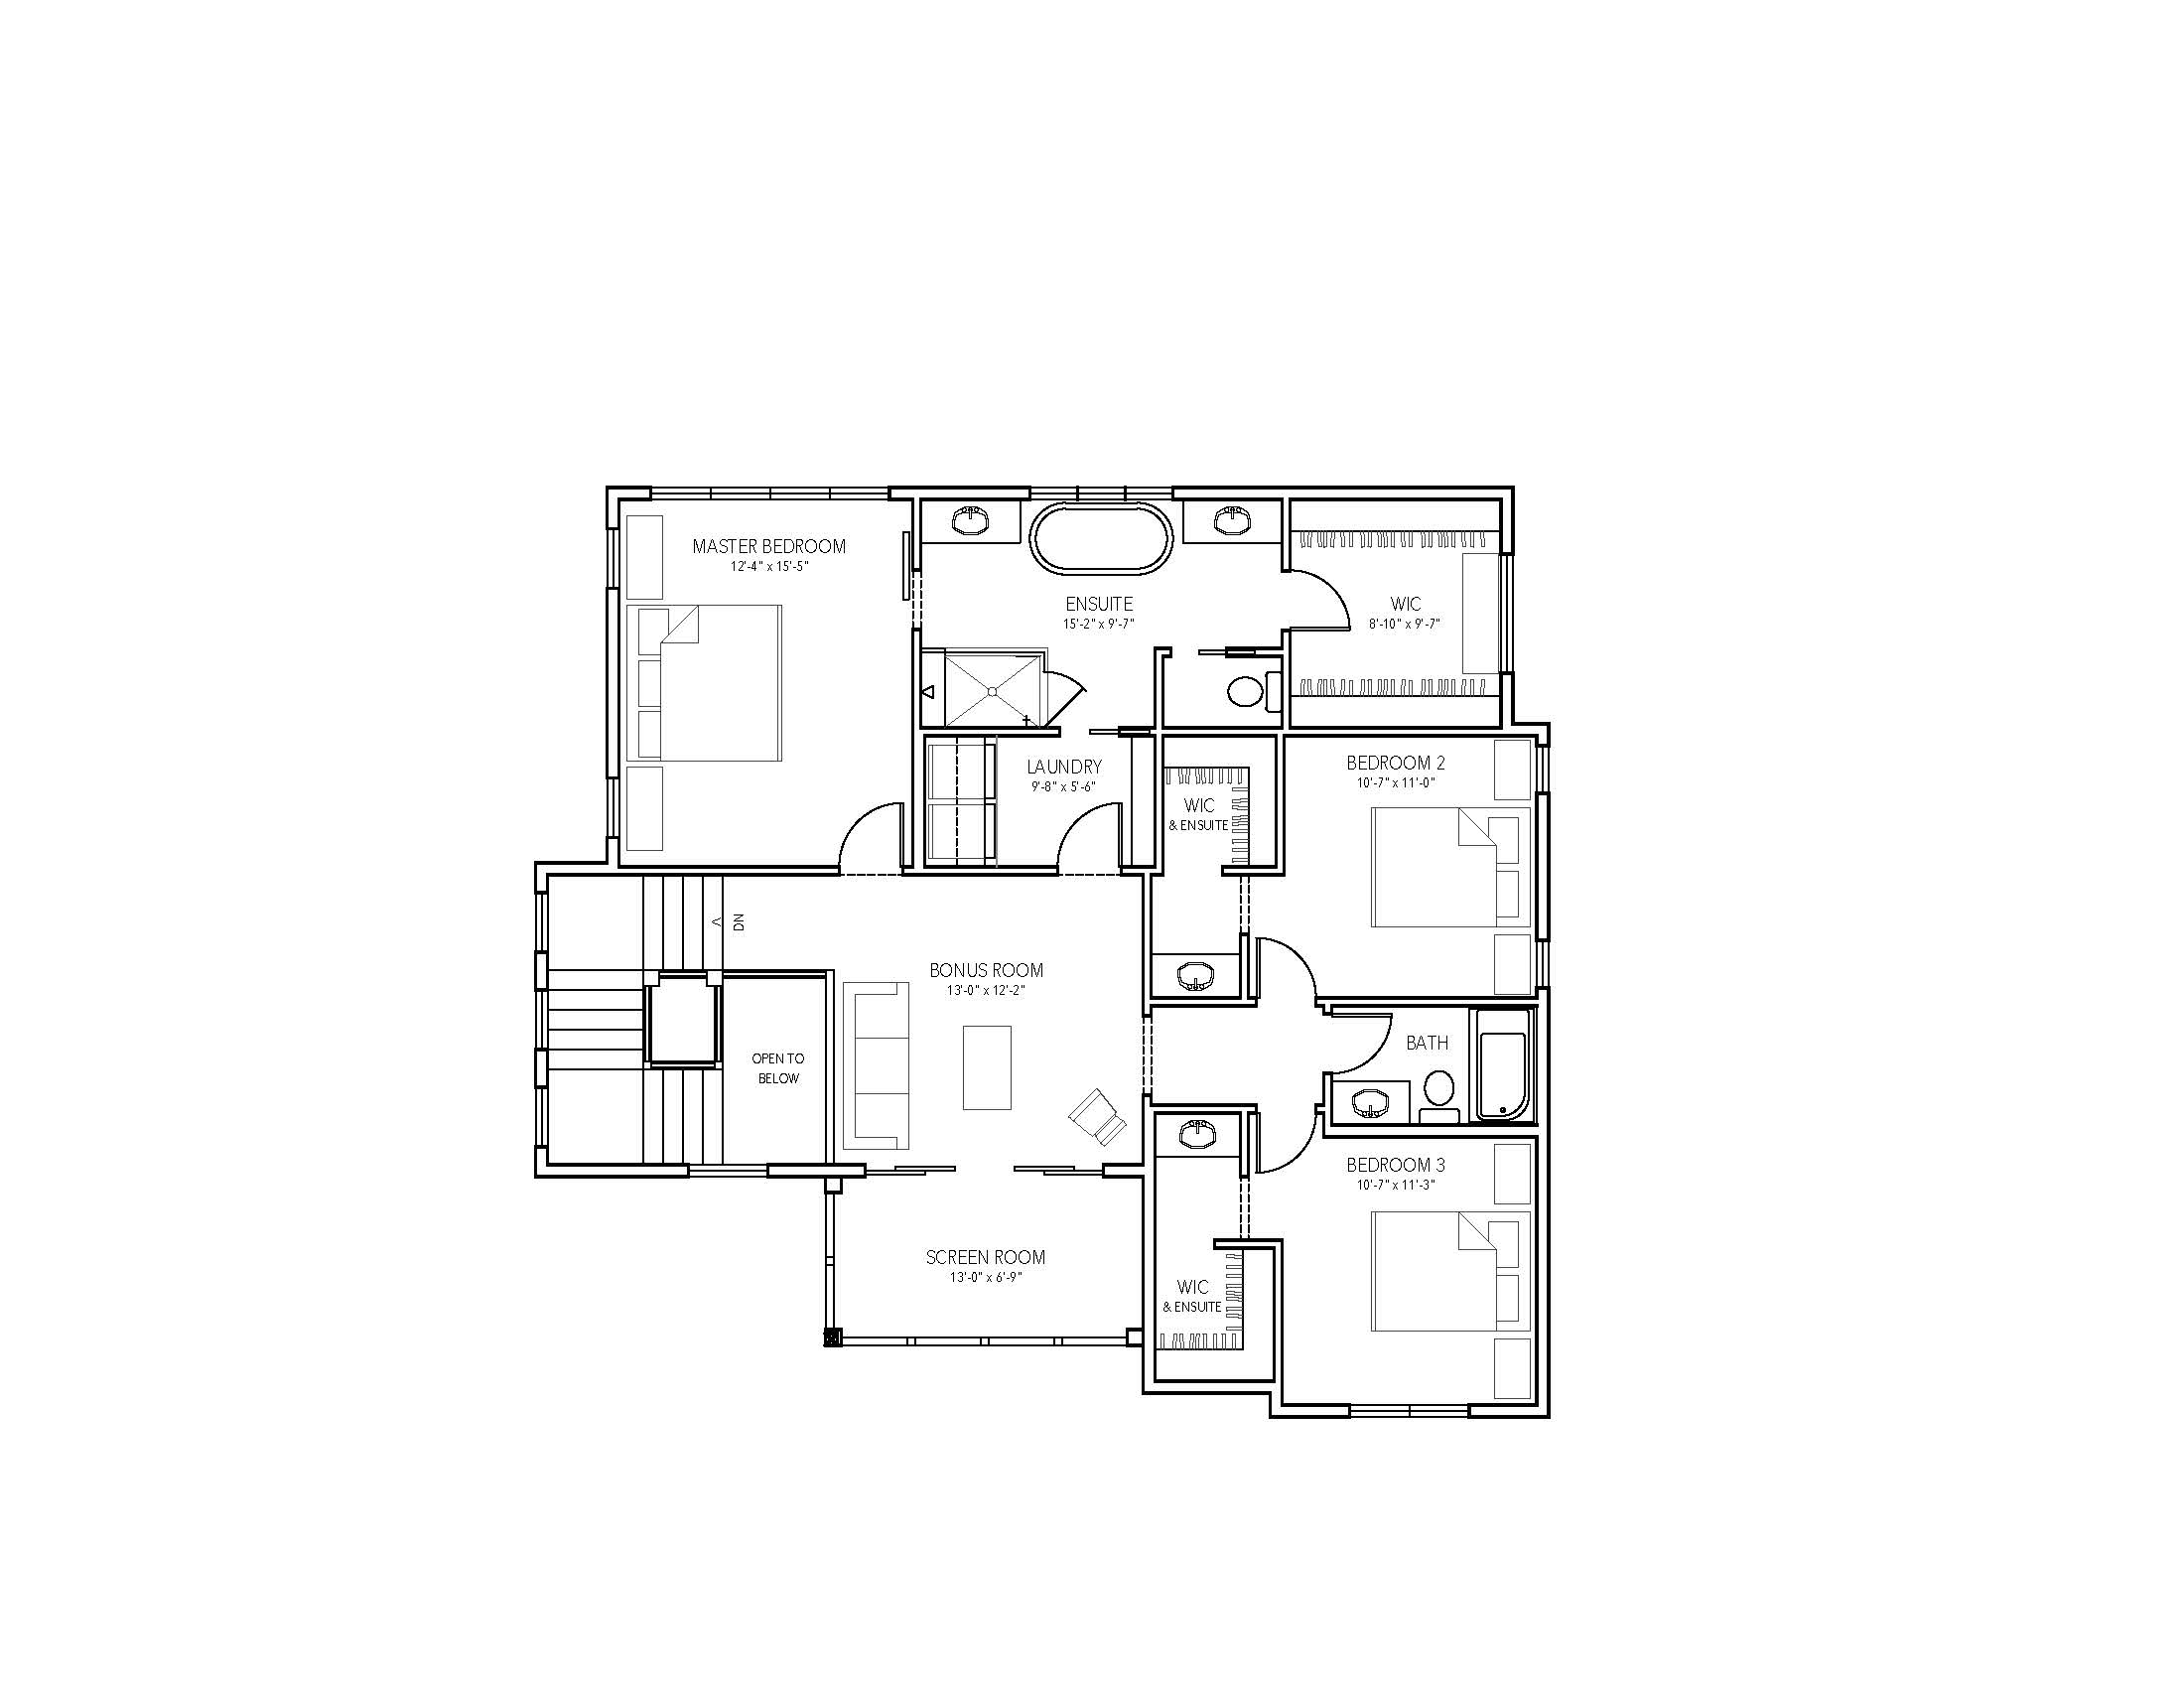 Upper Floor Plan (Copy)